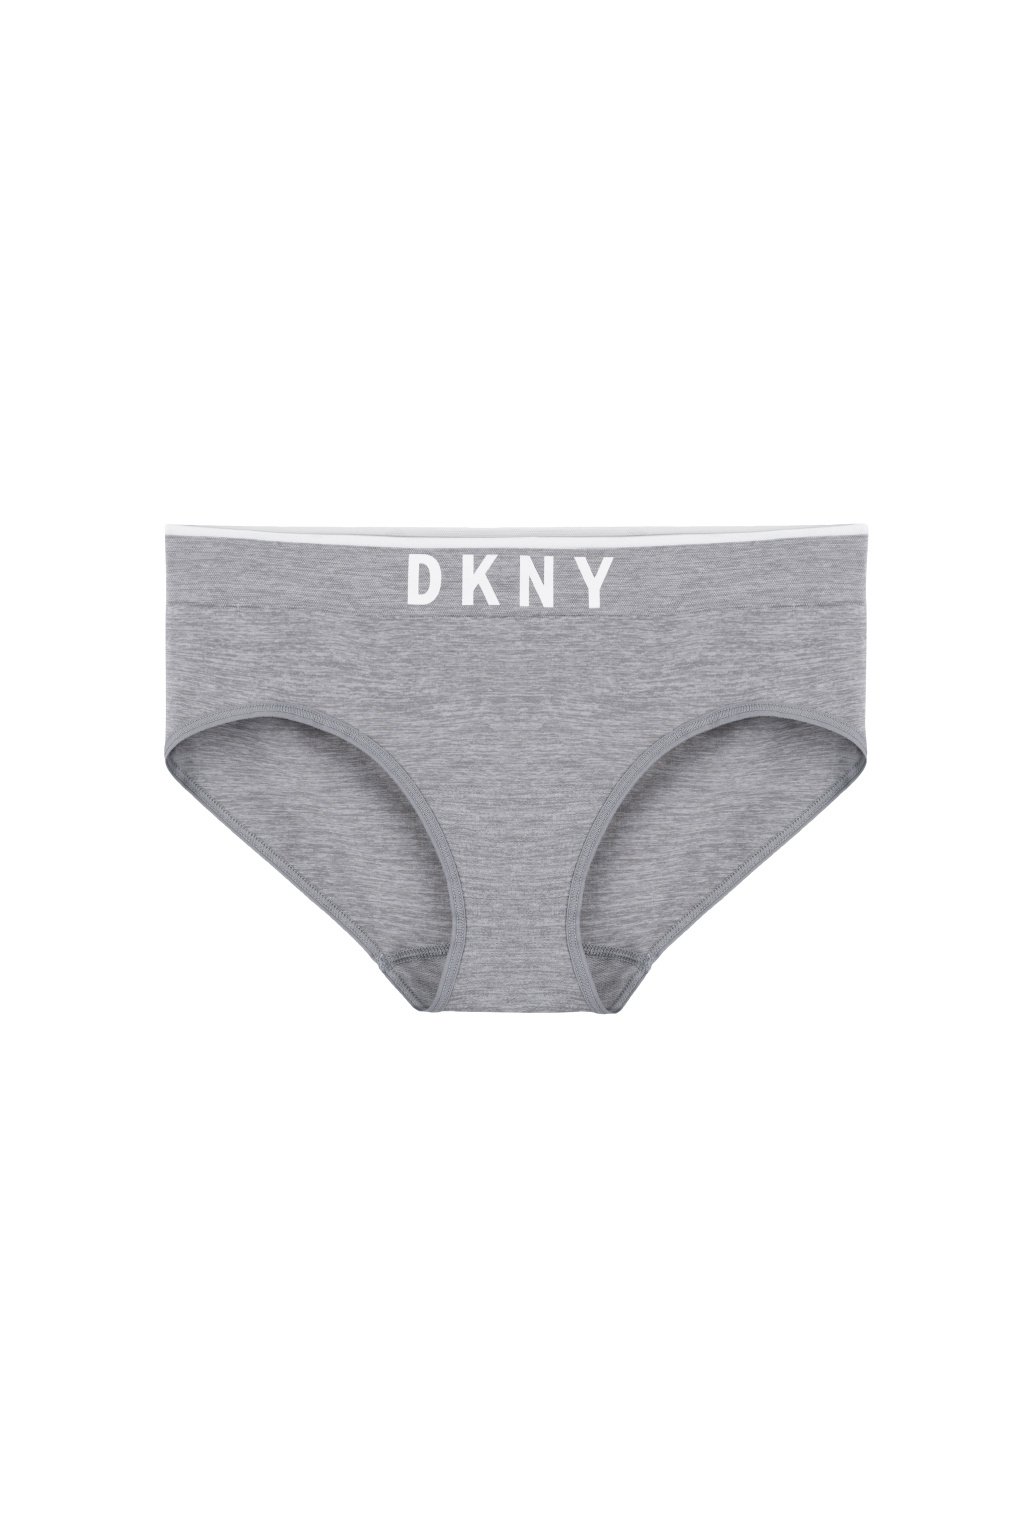 DKNY Litewear seamless bikini - šedé